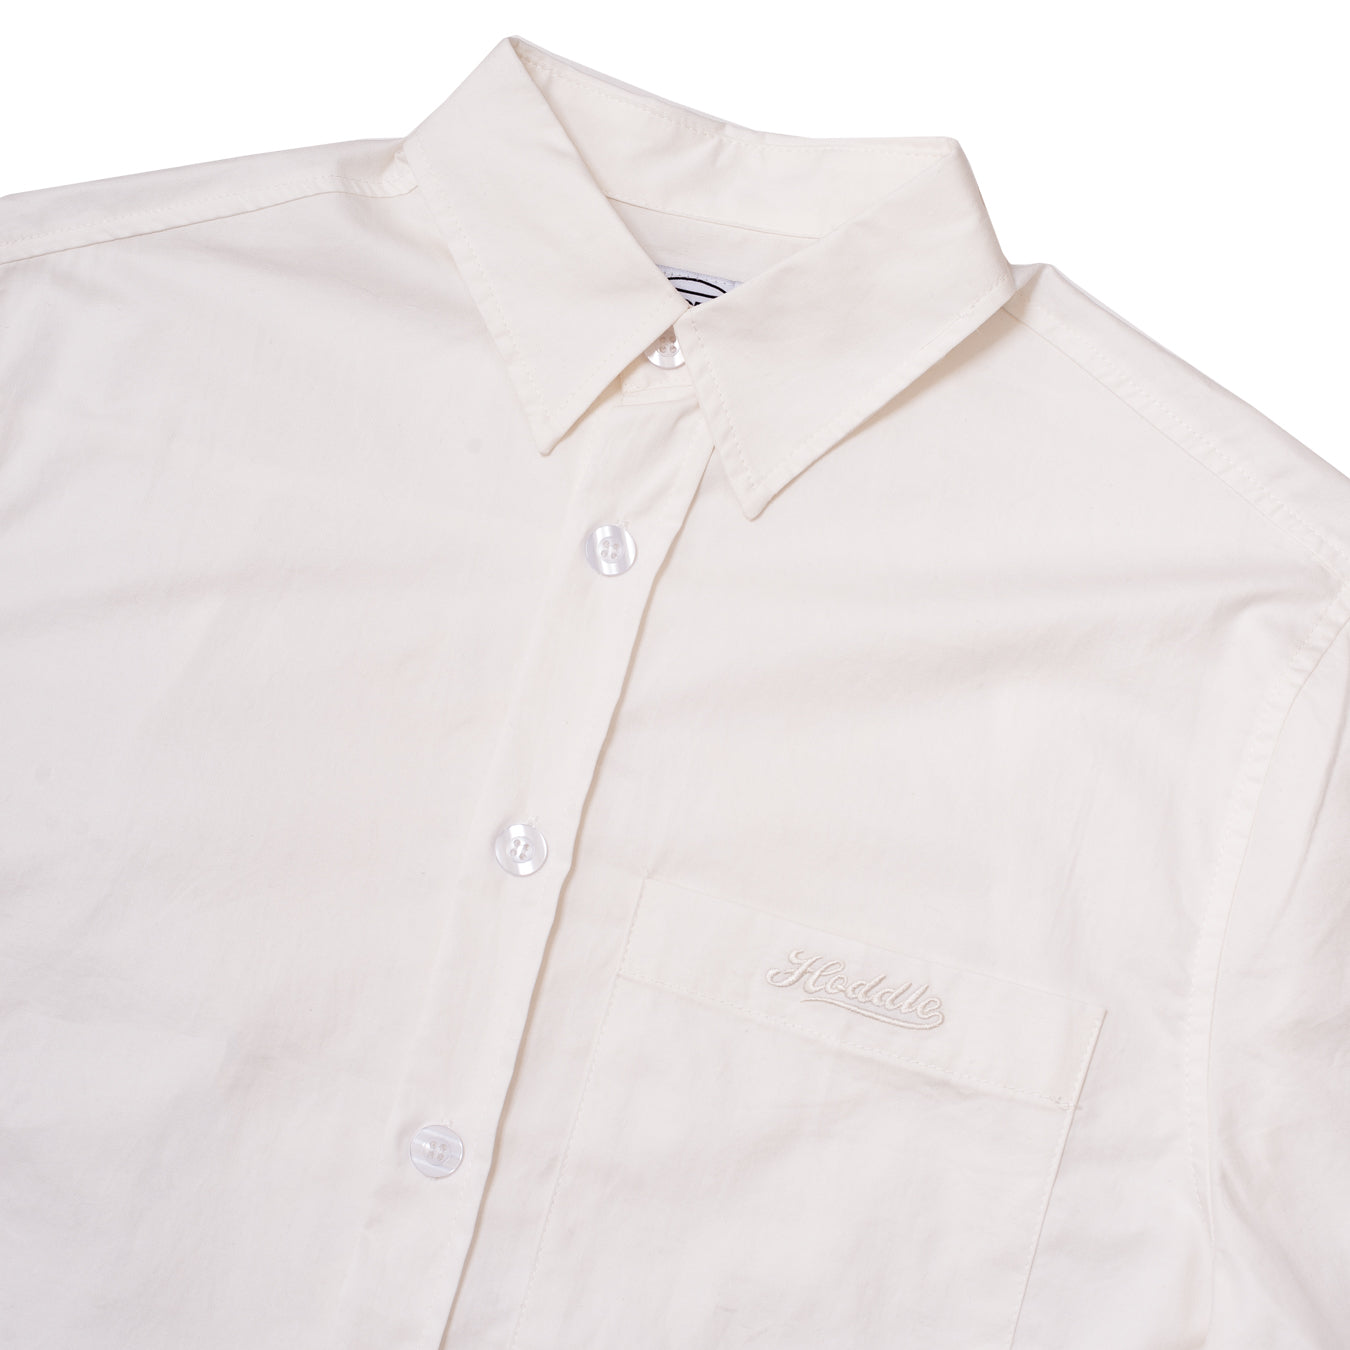 Cheval S/S Shirt, White